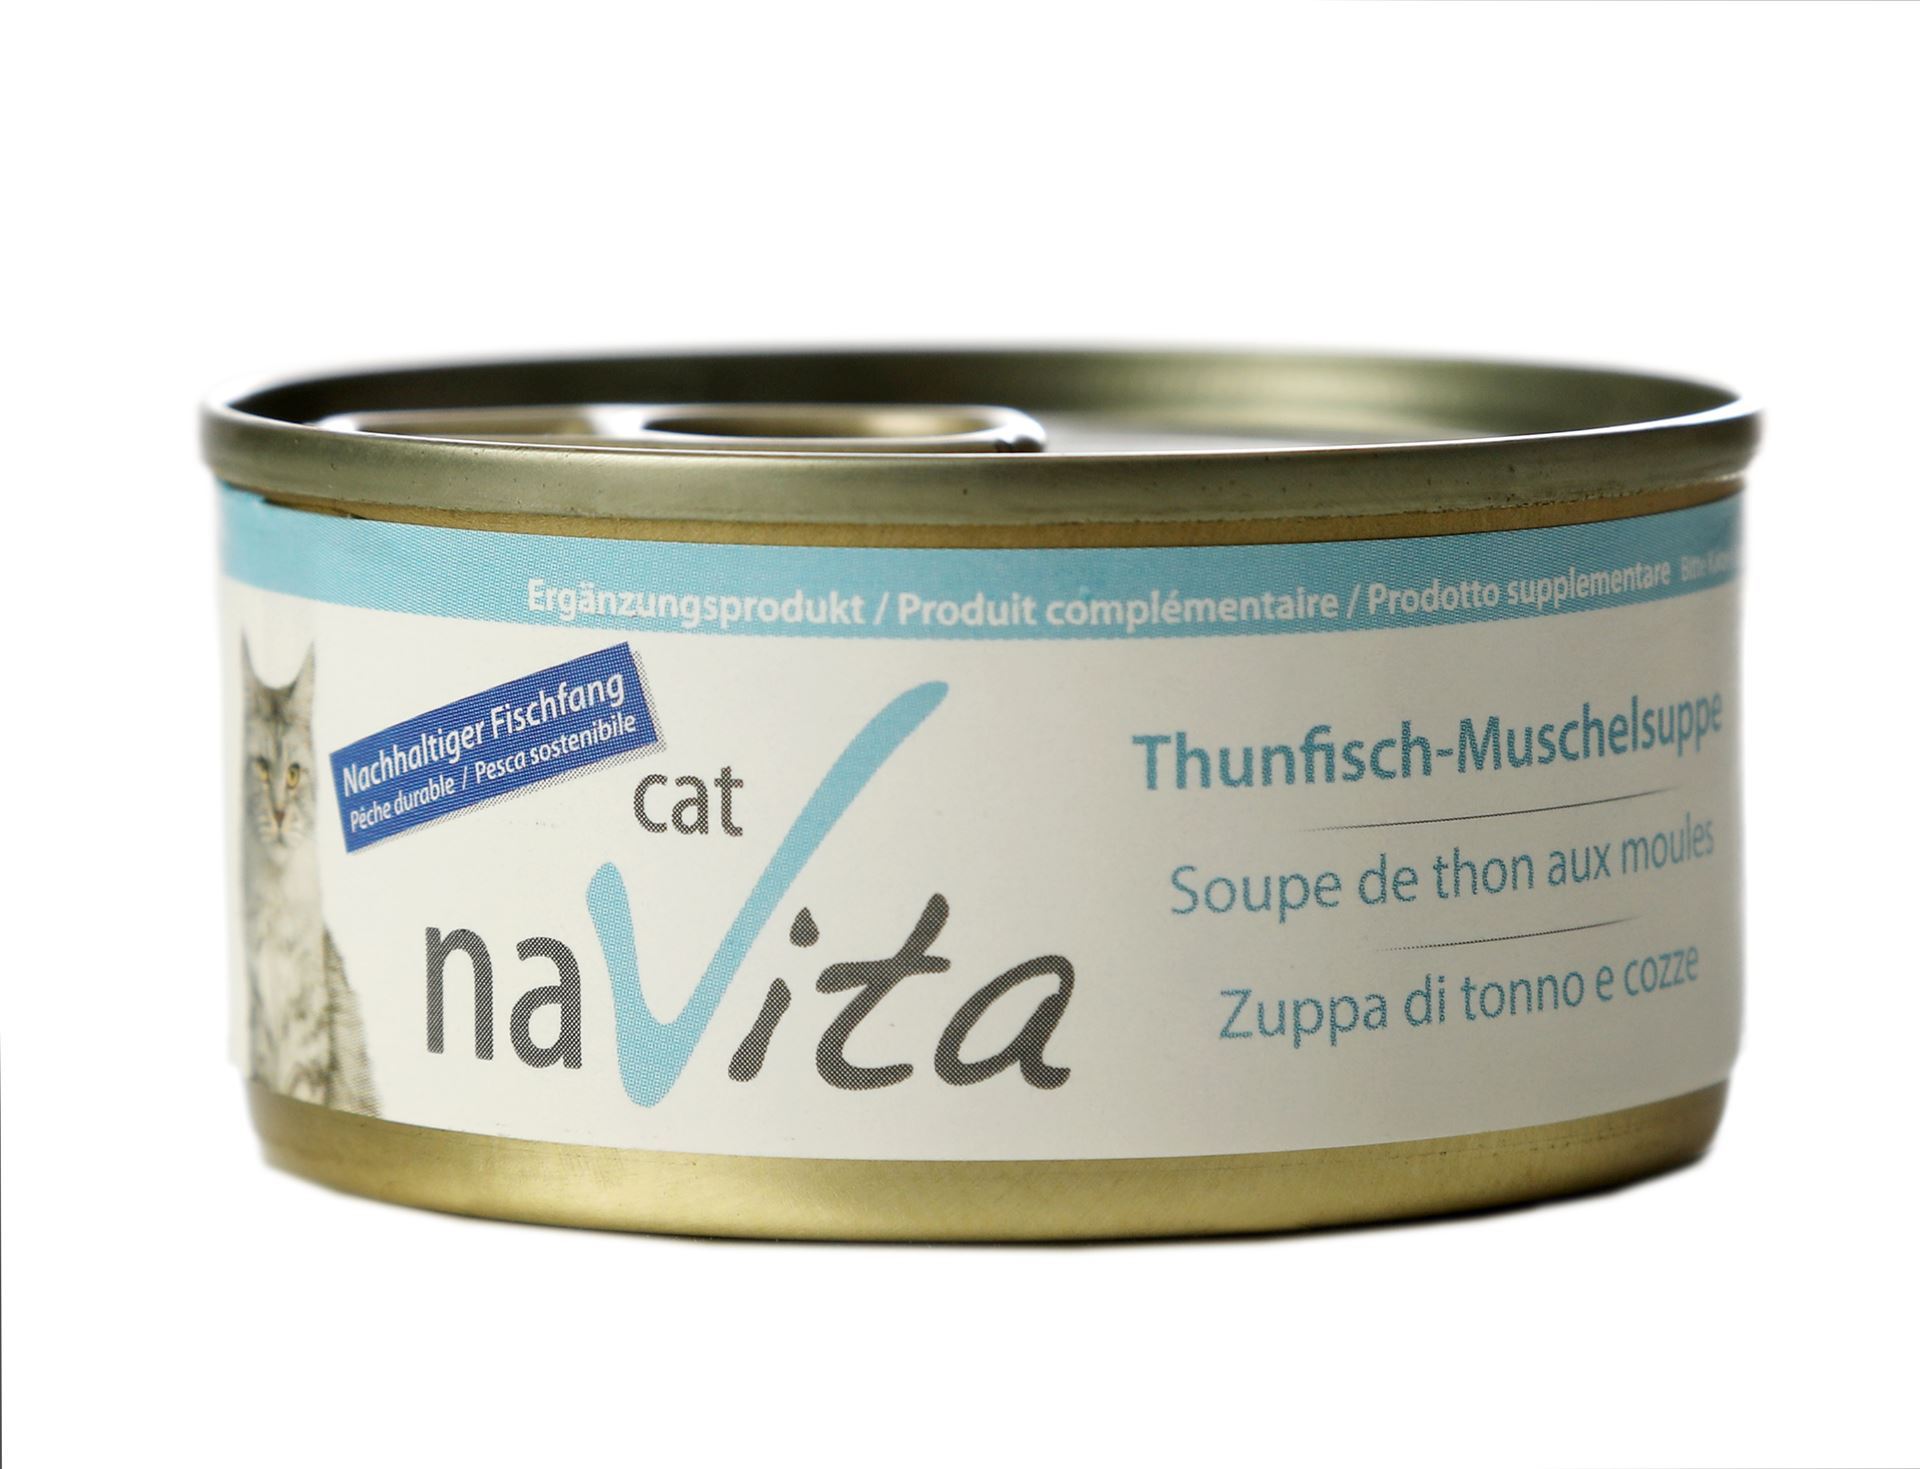 Thunfisch-Muschelsuppe